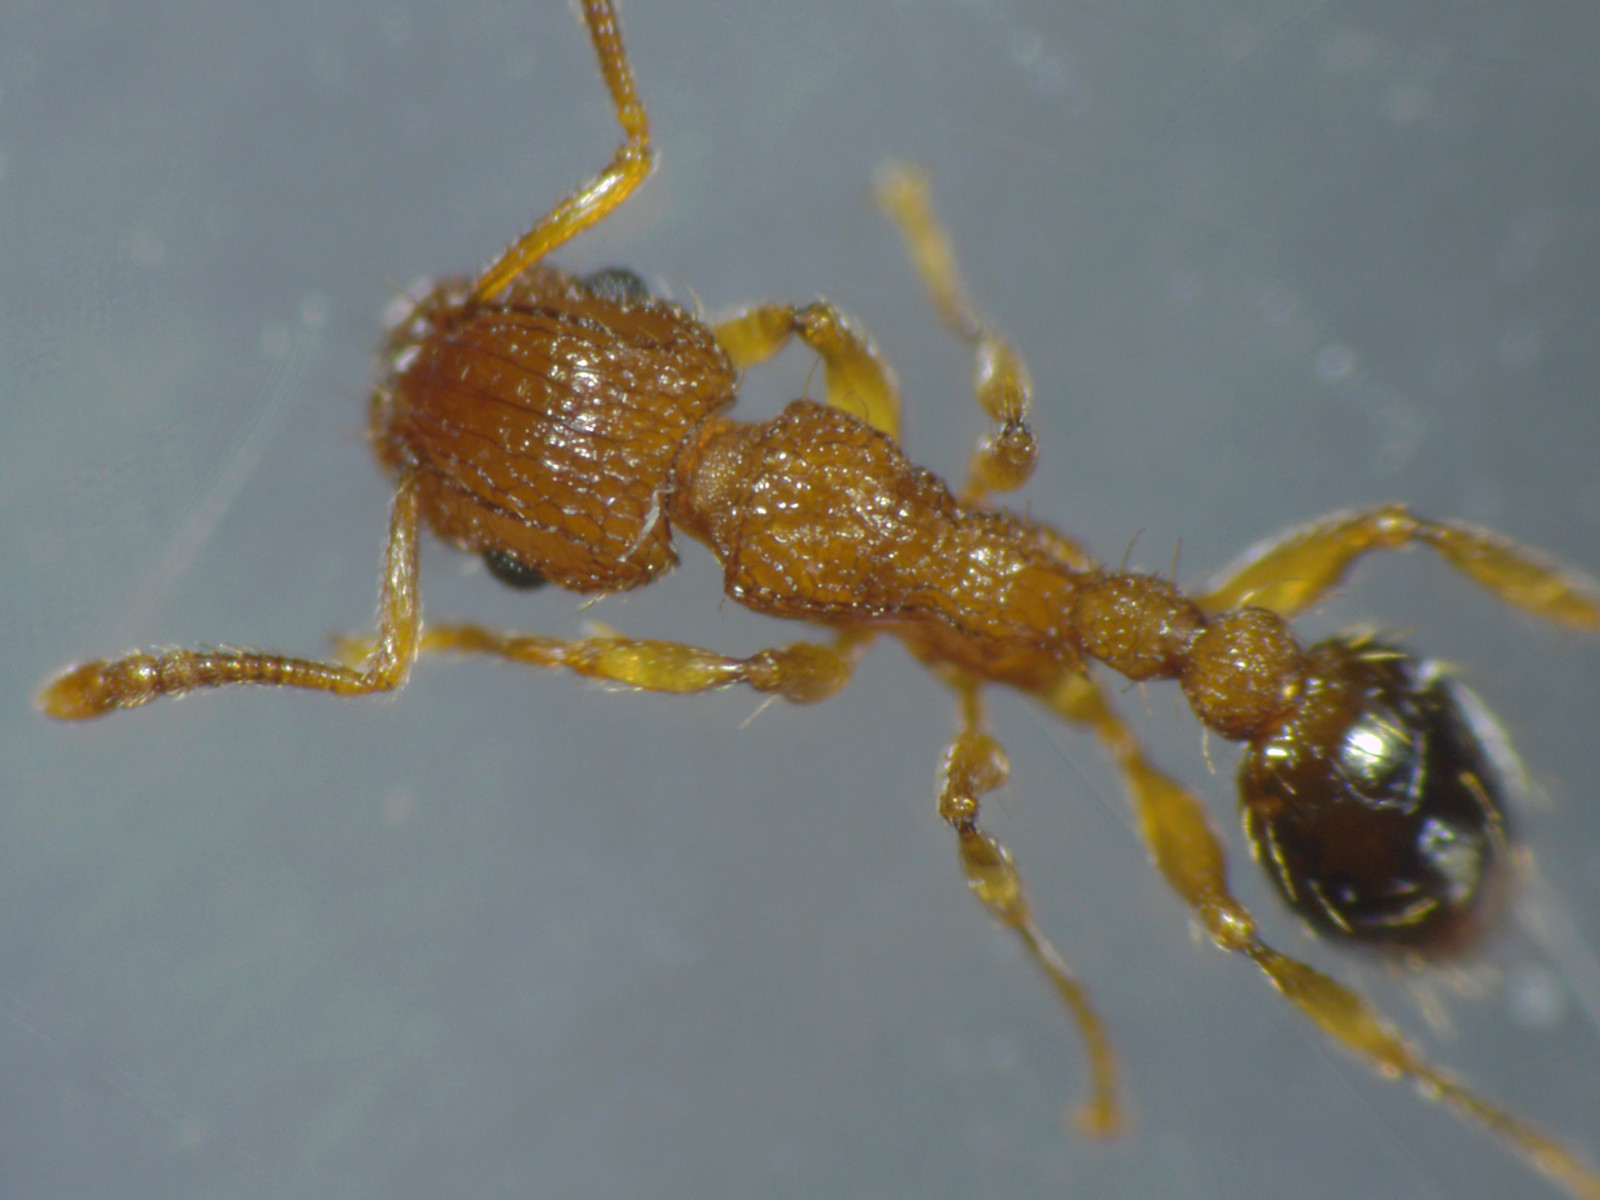 Ants under microscope image